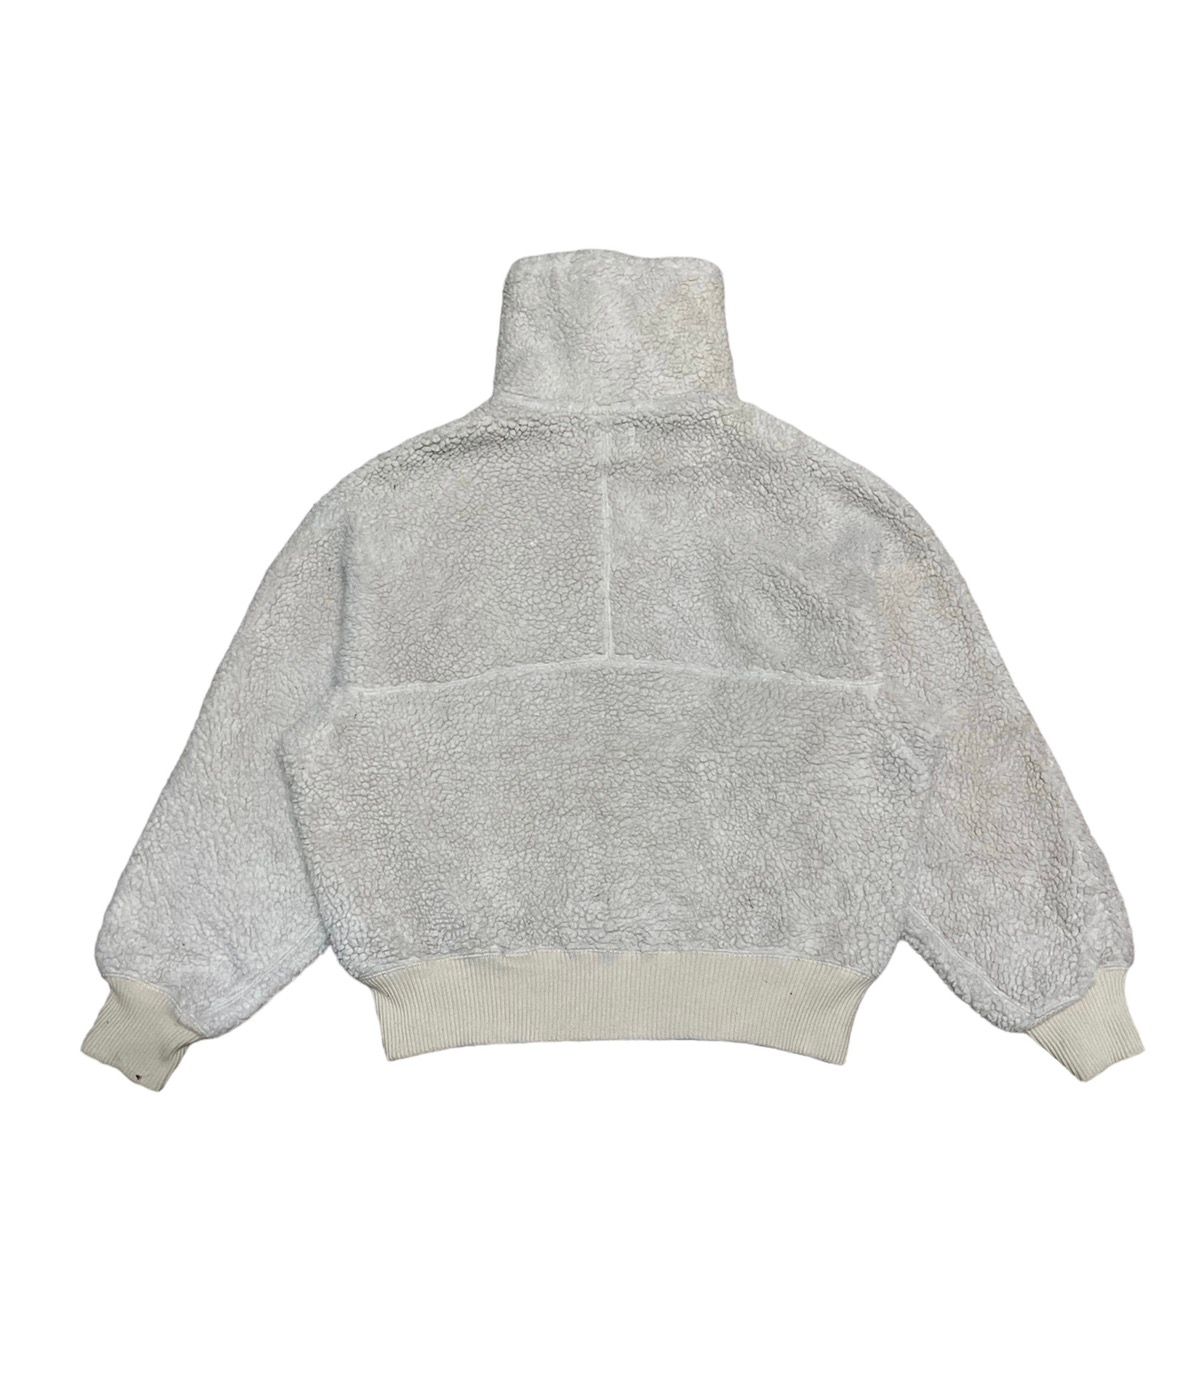 🔥NEED GONE🔥 Uniqlo Undercover Fleece Jacket - 3